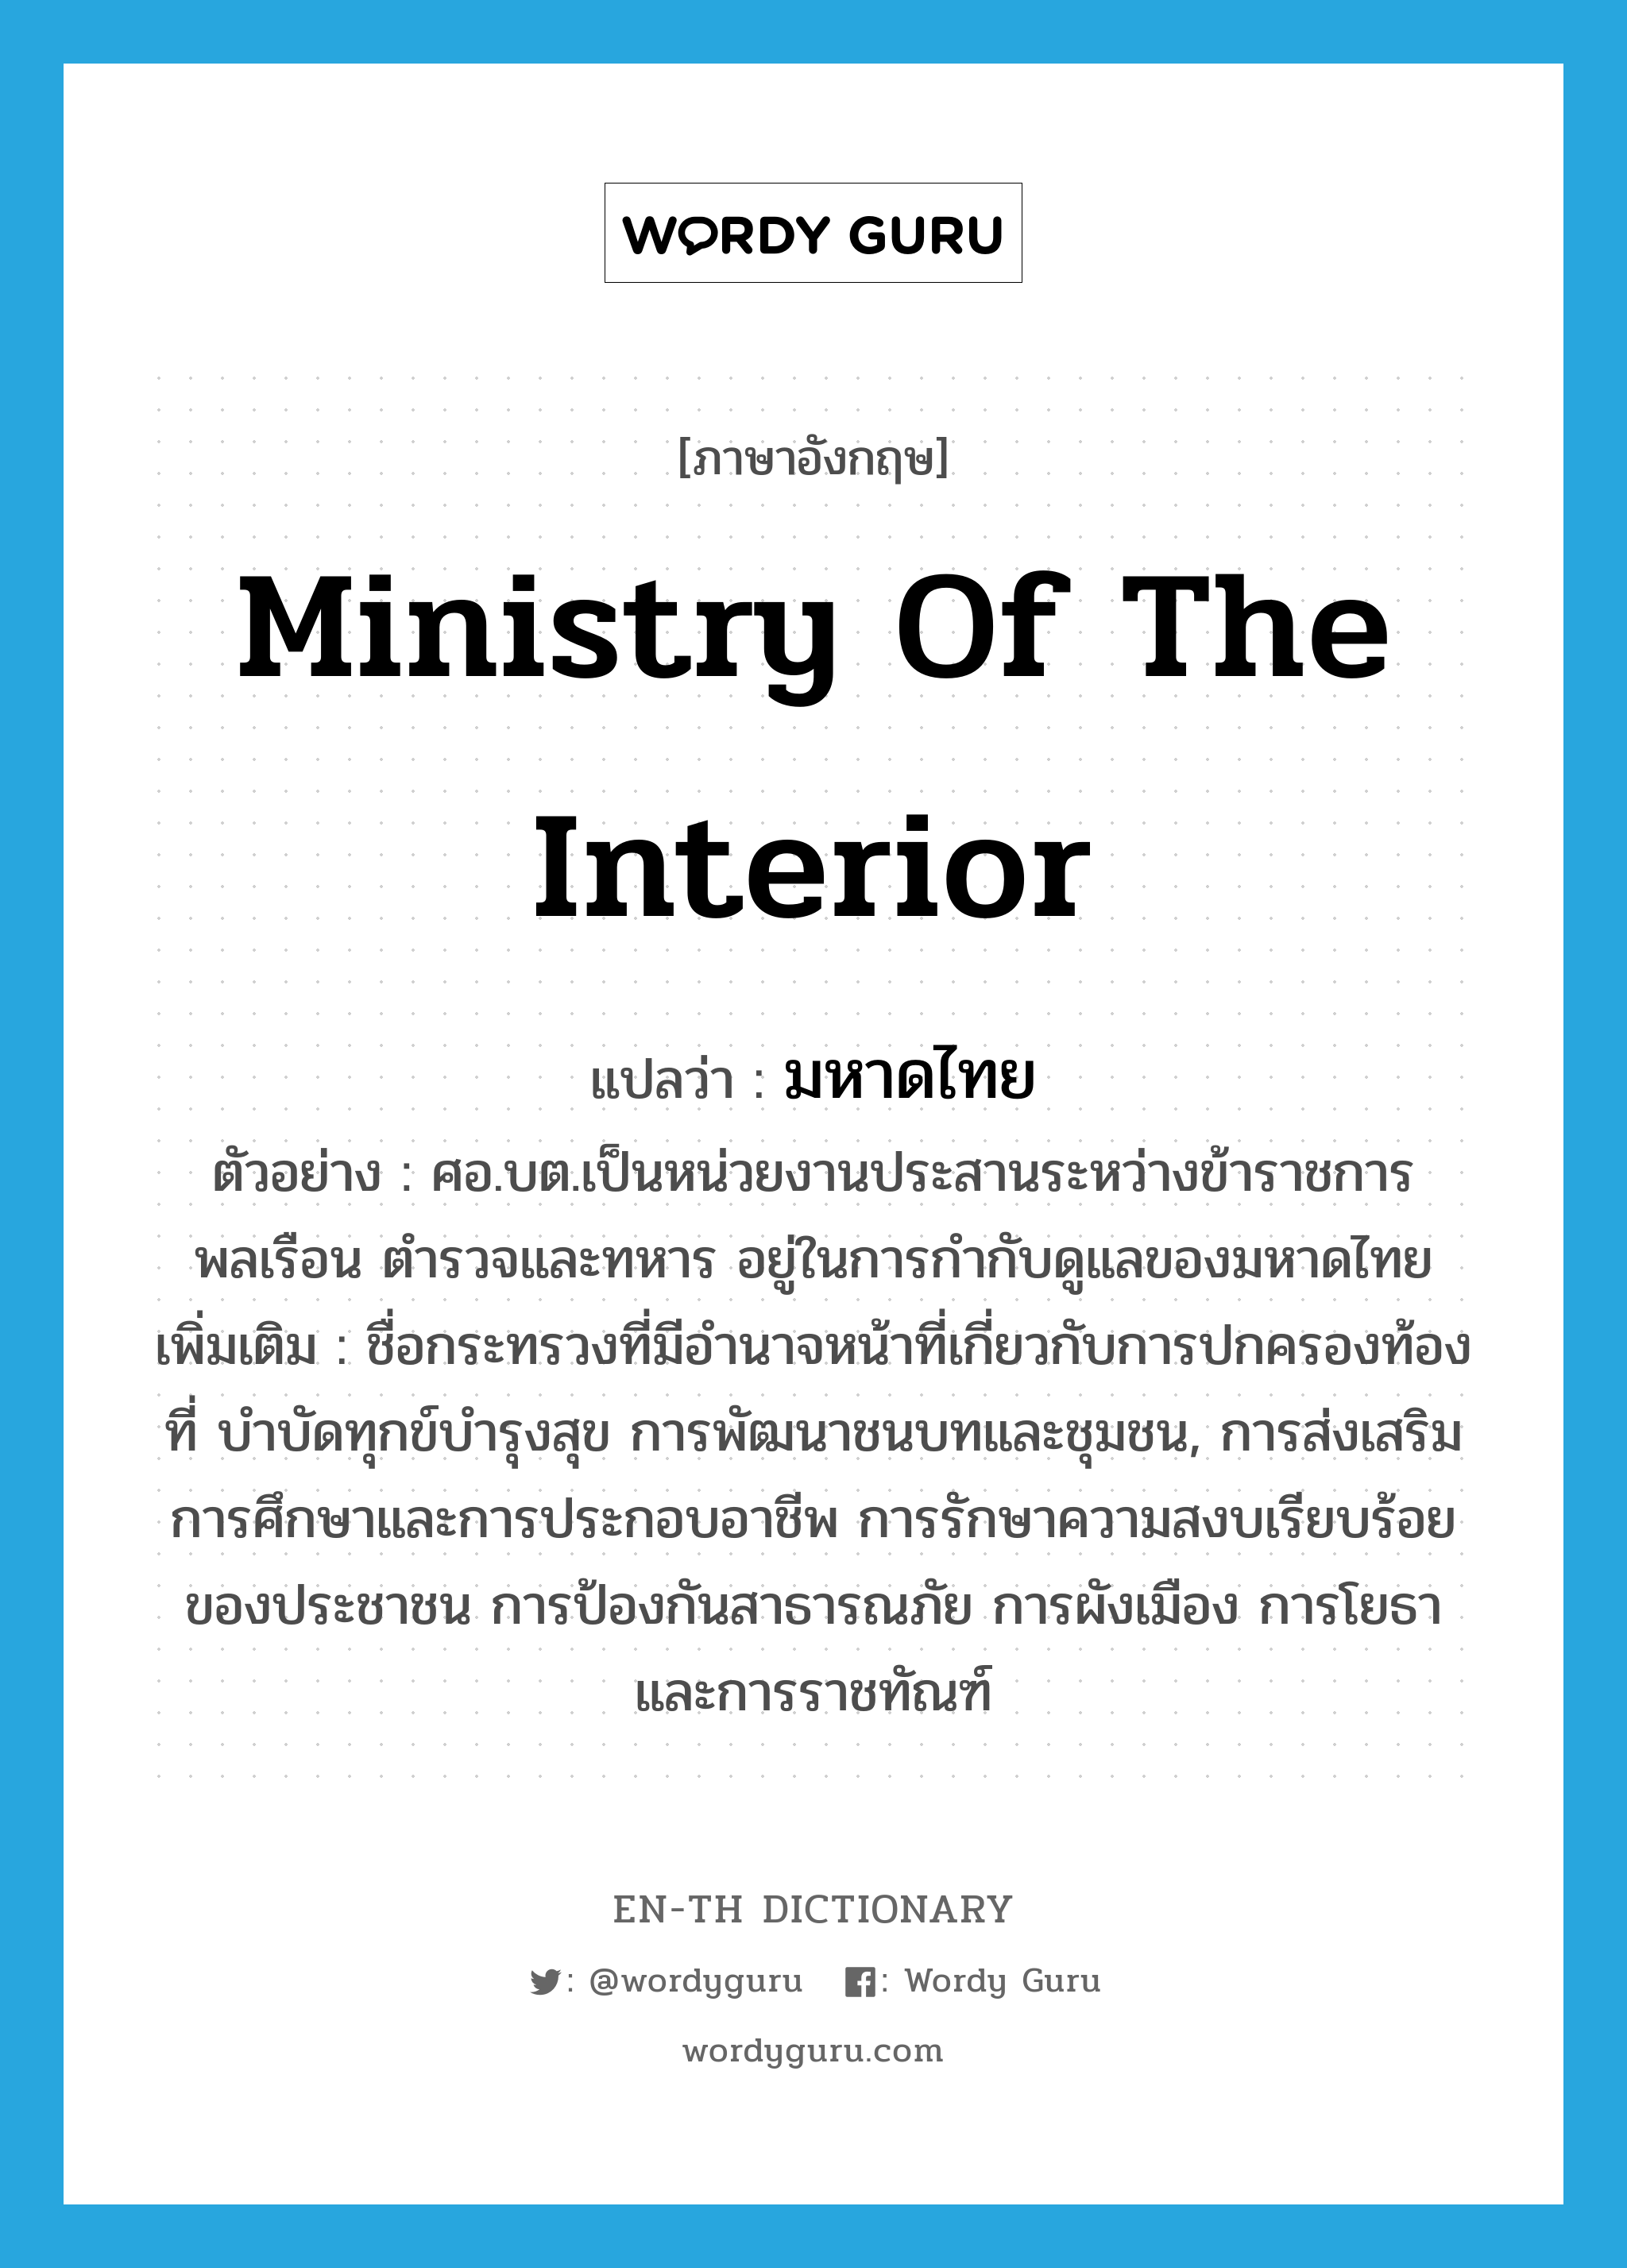 Ministry of the Interior แปลว่า?, คำศัพท์ภาษาอังกฤษ Ministry of the Interior แปลว่า มหาดไทย ประเภท N ตัวอย่าง ศอ.บต.เป็นหน่วยงานประสานระหว่างข้าราชการพลเรือน ตำรวจและทหาร อยู่ในการกำกับดูแลของมหาดไทย เพิ่มเติม ชื่อกระทรวงที่มีอำนาจหน้าที่เกี่ยวกับการปกครองท้องที่ บำบัดทุกข์บำรุงสุข การพัฒนาชนบทและชุมชน, การส่งเสริมการศึกษาและการประกอบอาชีพ การรักษาความสงบเรียบร้อยของประชาชน การป้องกันสาธารณภัย การผังเมือง การโยธา และการราชทัณฑ์ หมวด N